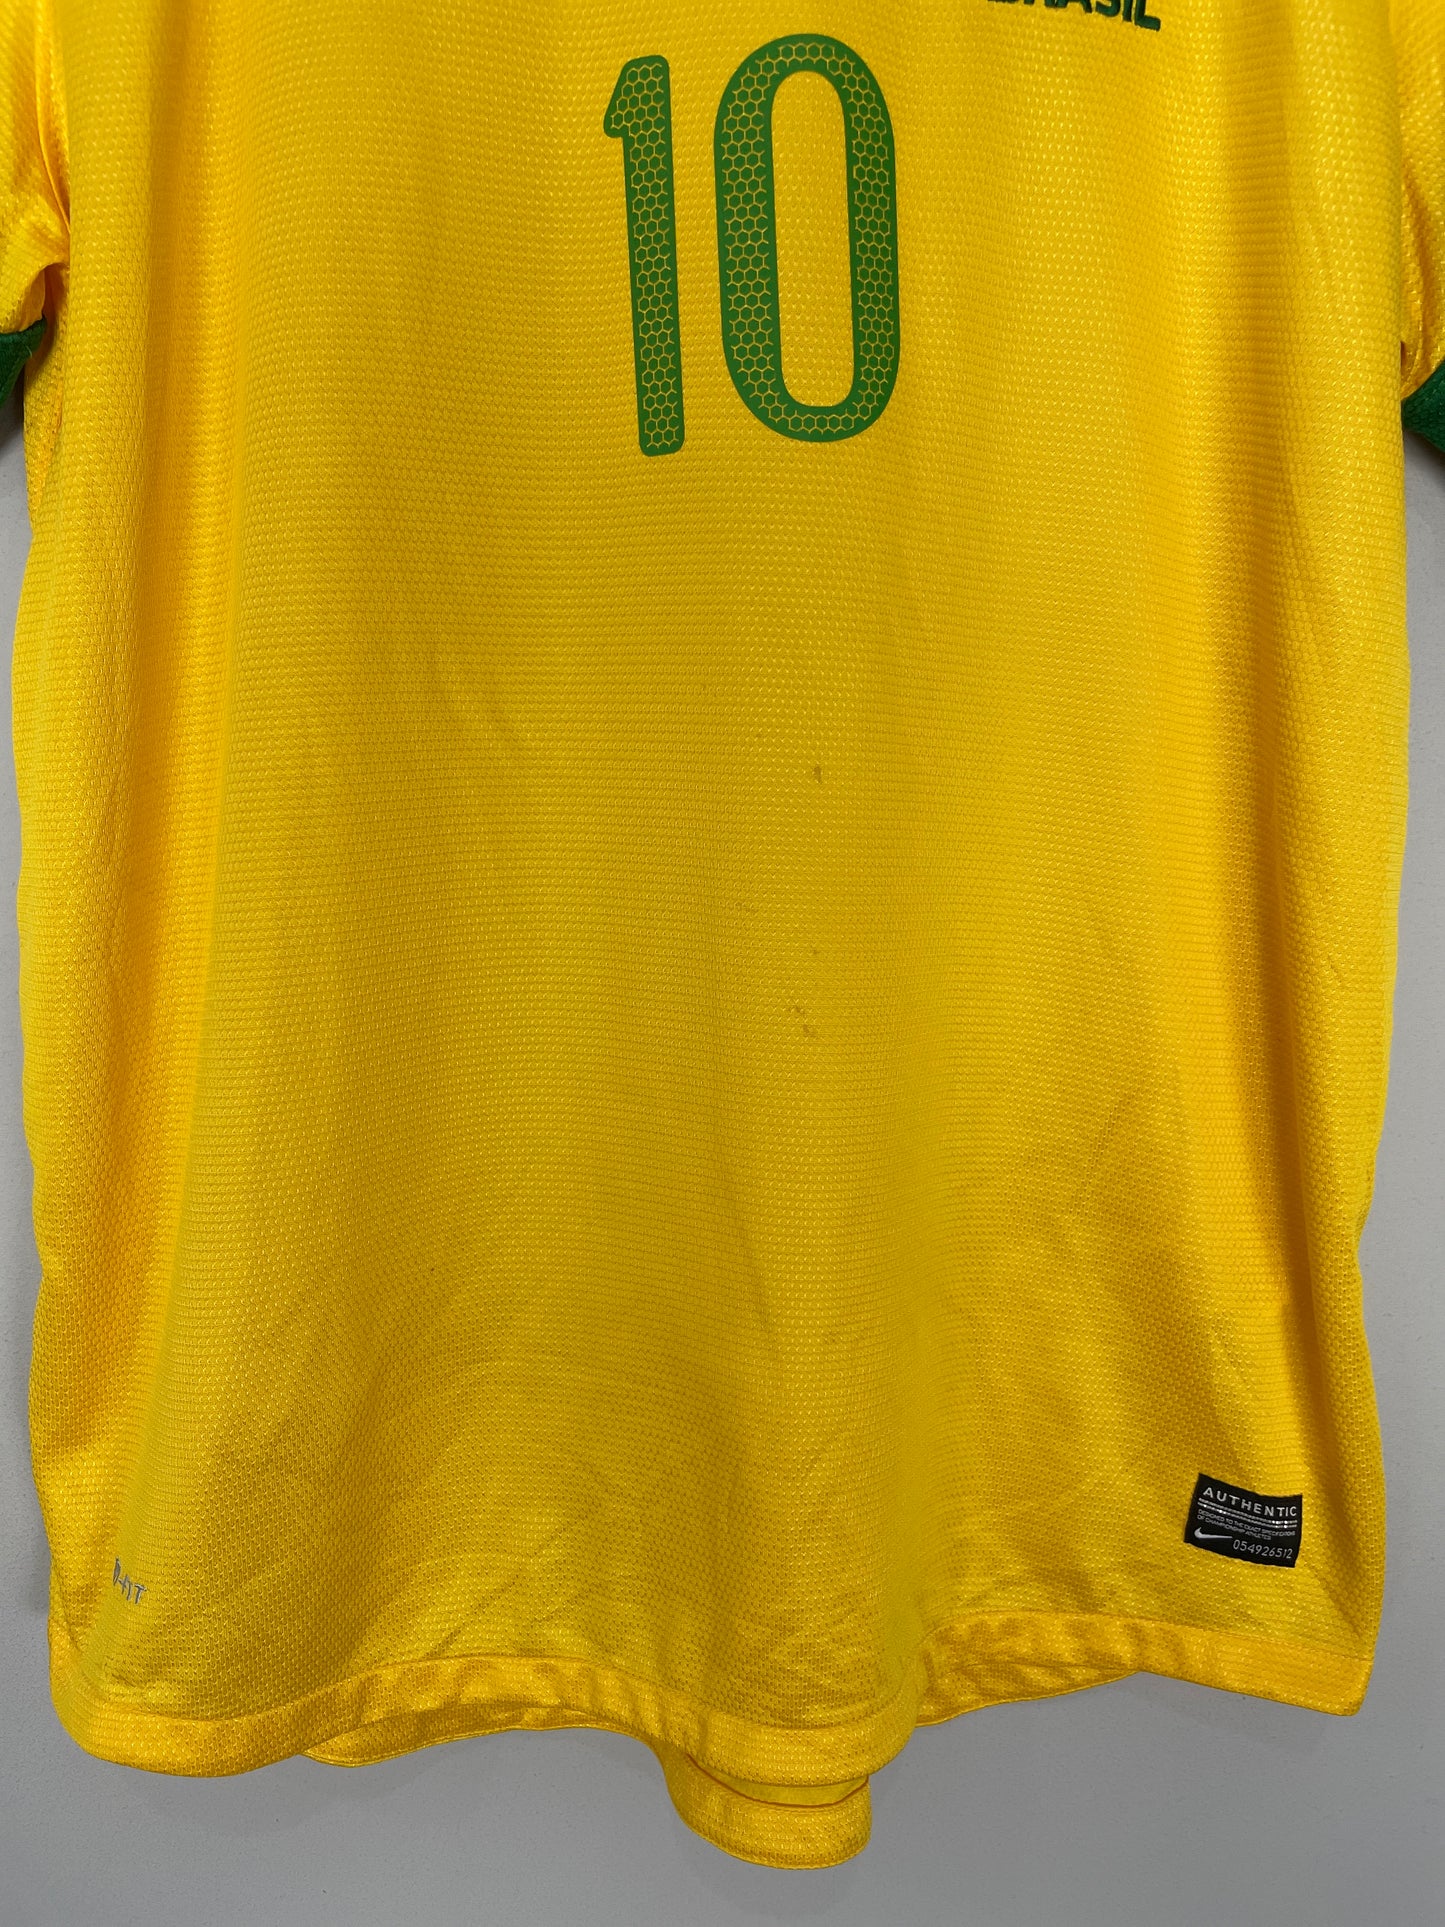 2012/13 BRAZIL NEYMAR JR #10 HOME SHIRT (L) NIKE